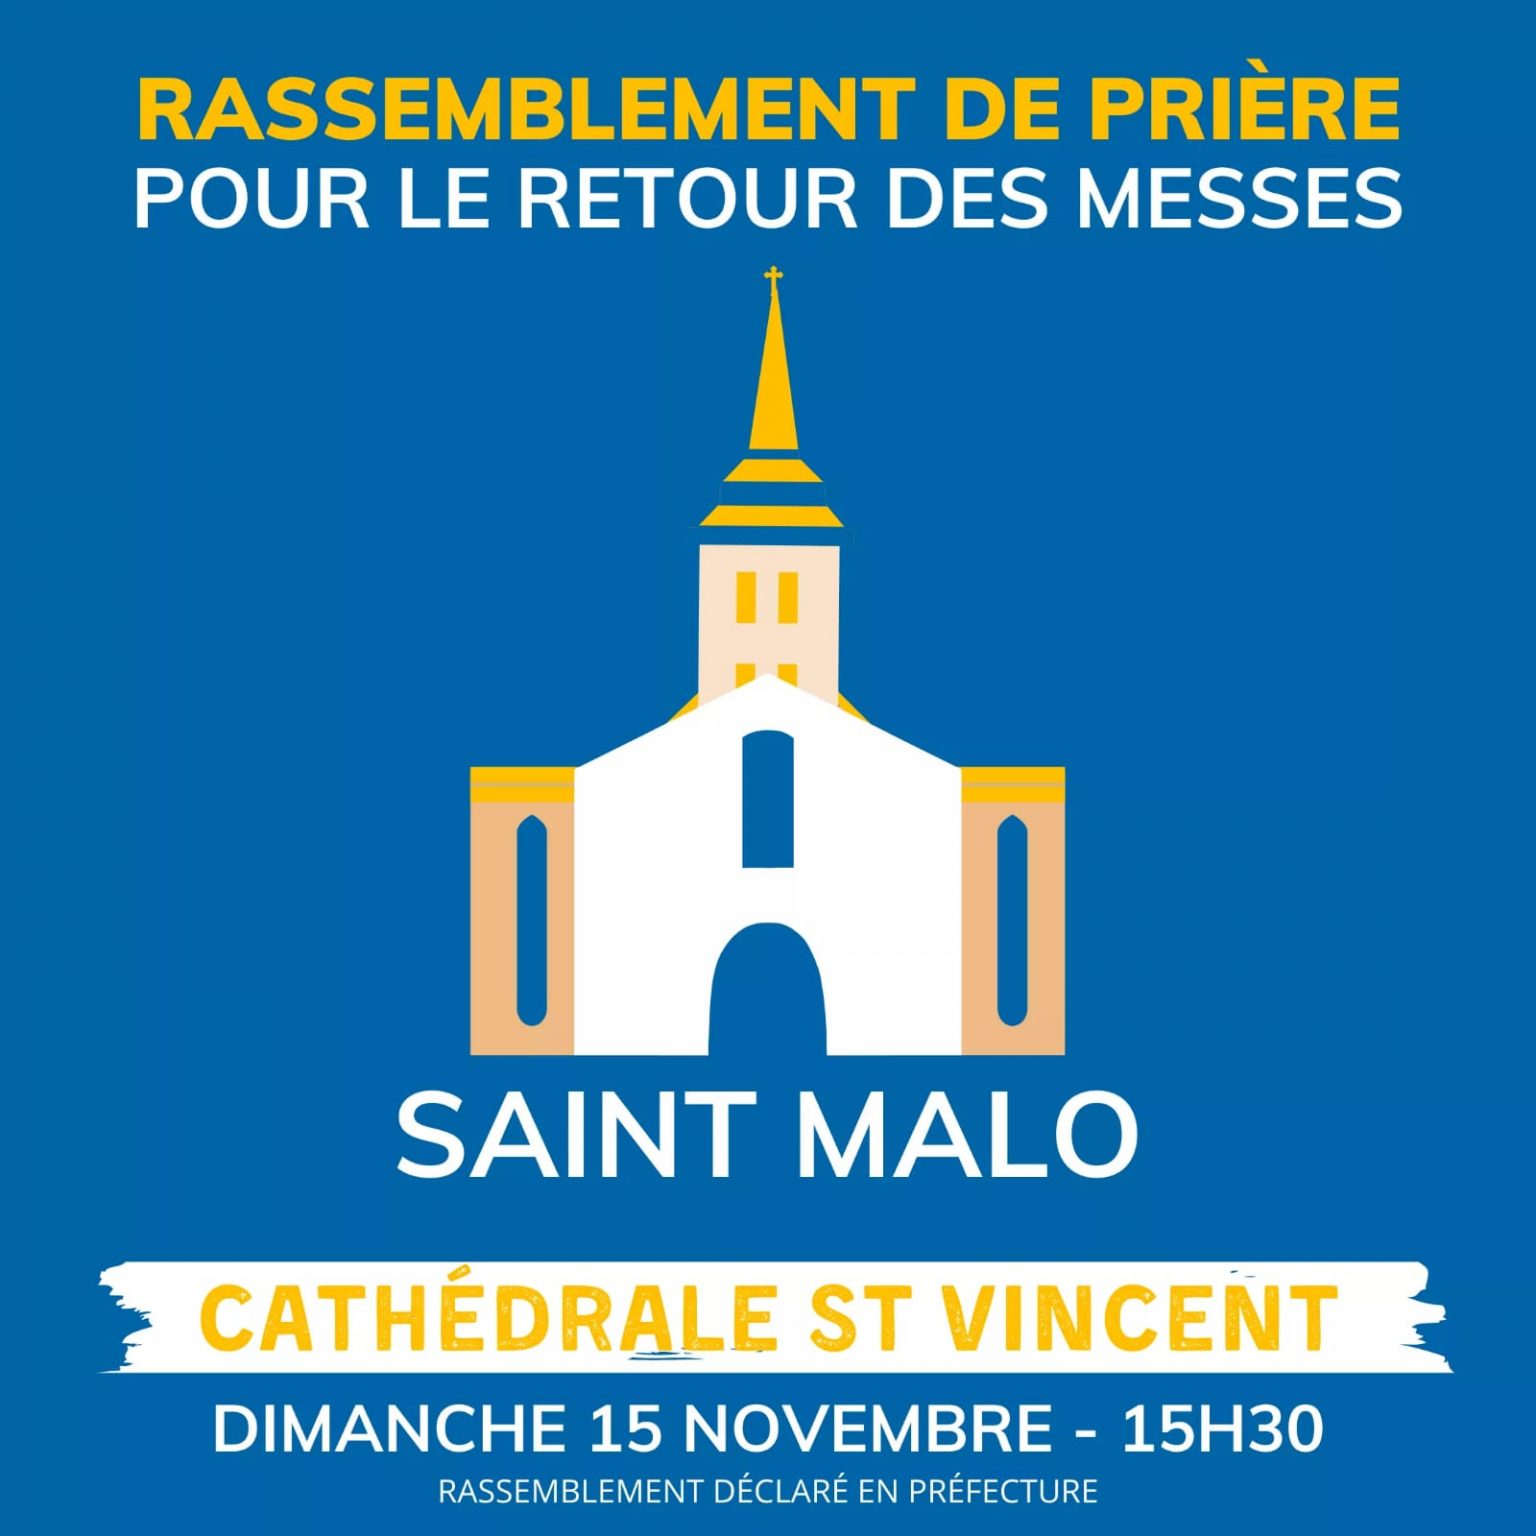 Dimanche 15 novembre : rassemblements pour la messe 1605035504454-1536x1536